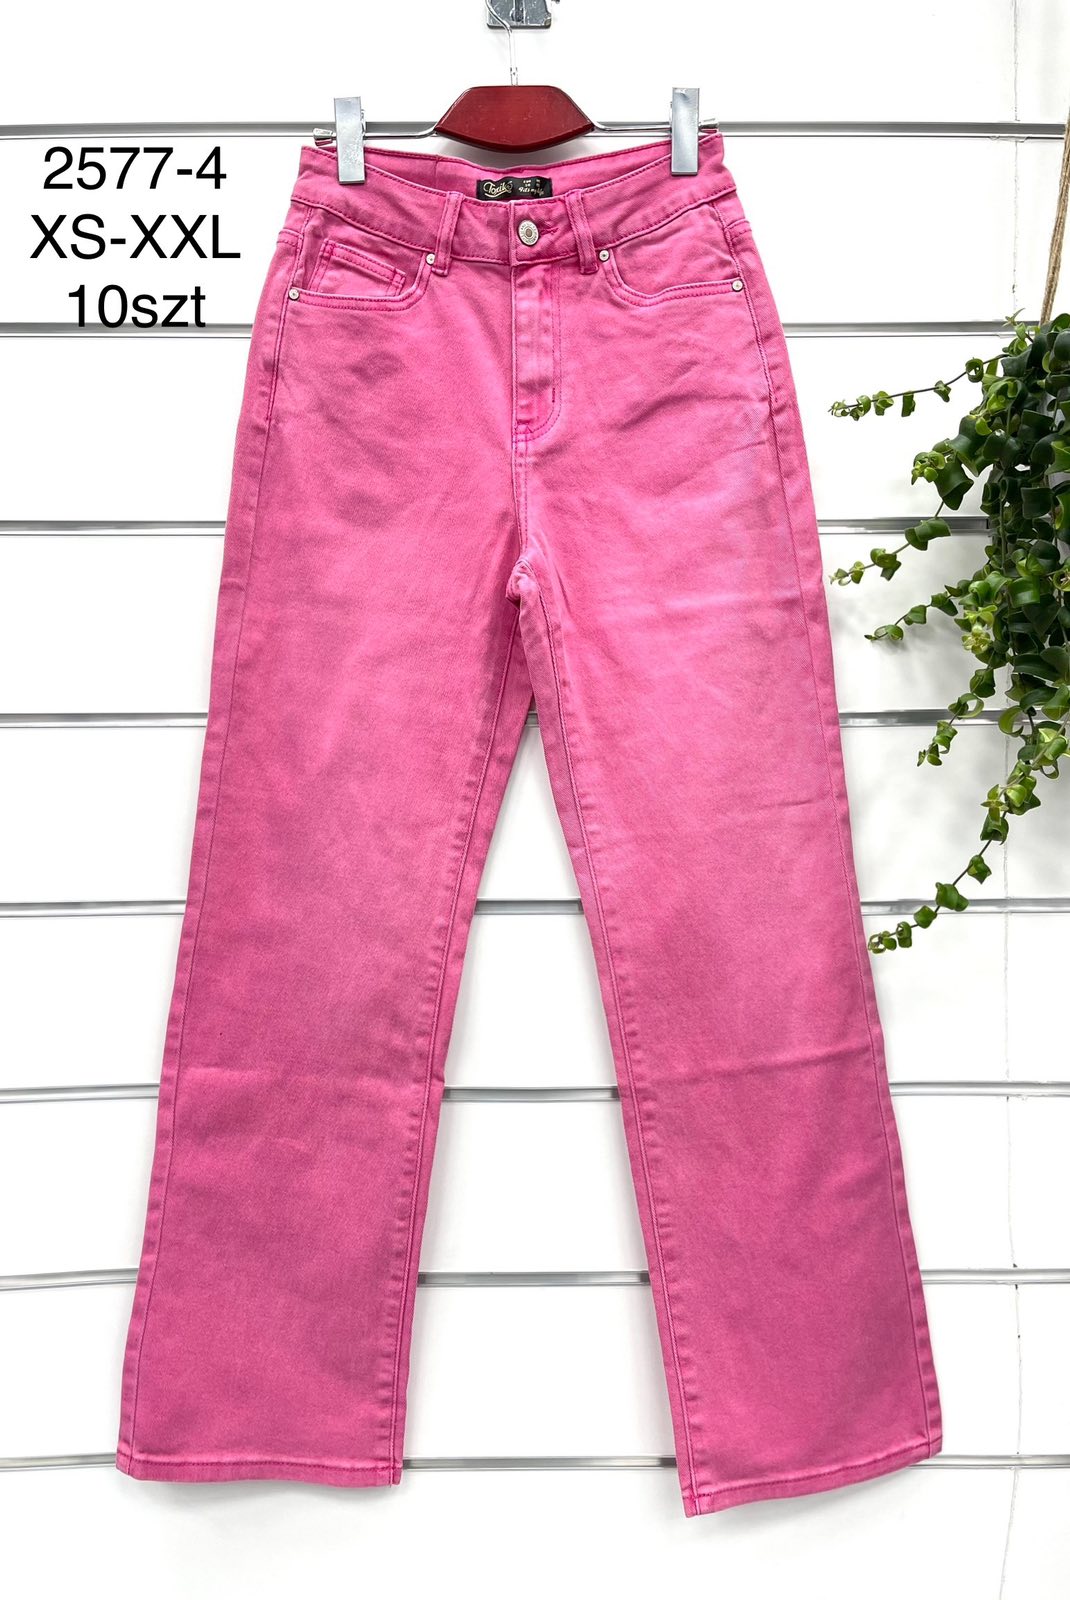 Spodnie damskie jeans Roz  XS-XL .  1 kolor . Paczka 10szt